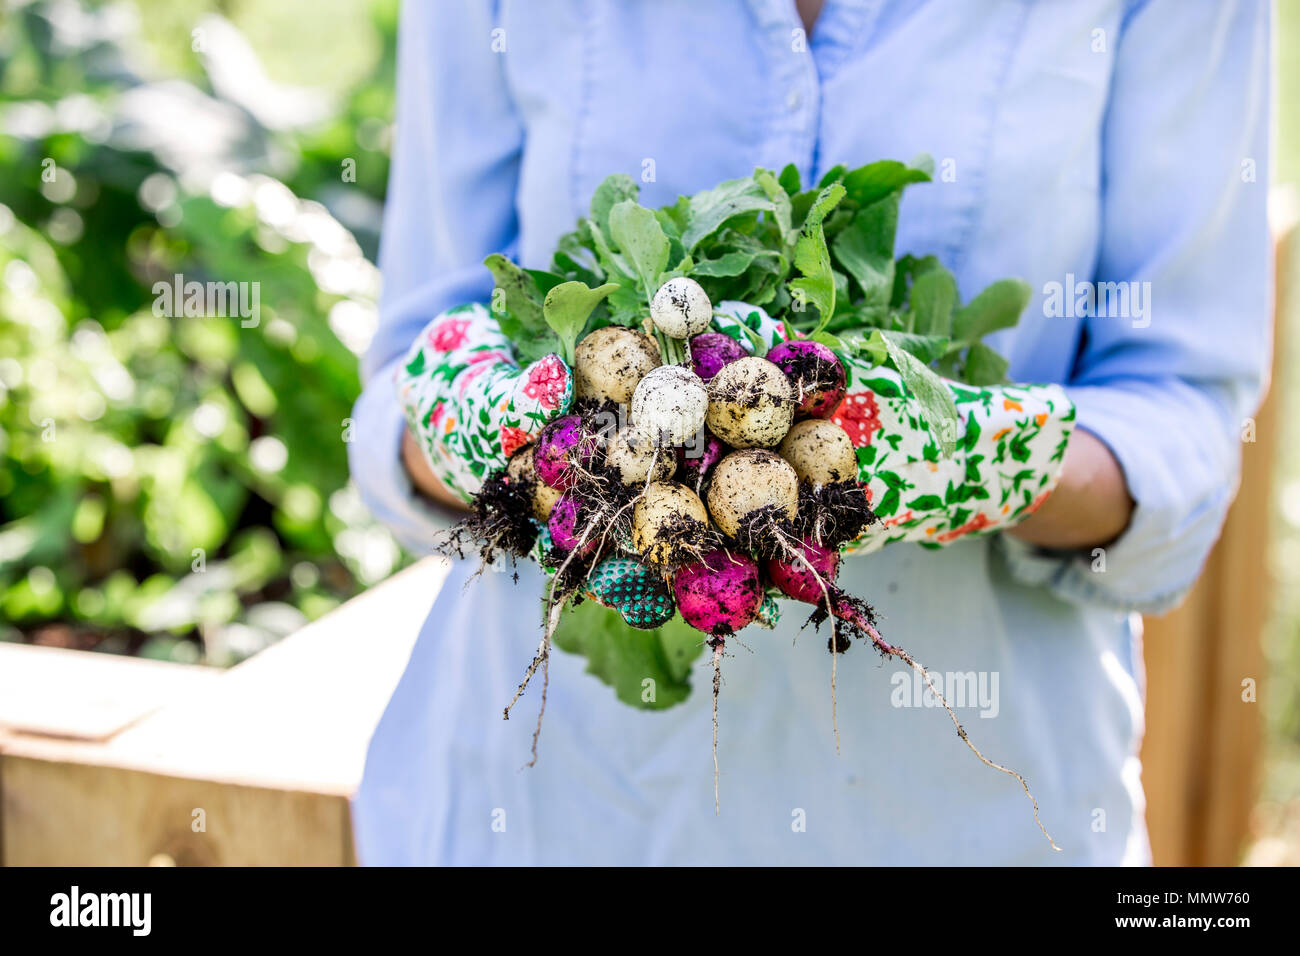 Giardinaggio - Donna è la raccolta di ravanelli dal letto sollevata Foto Stock